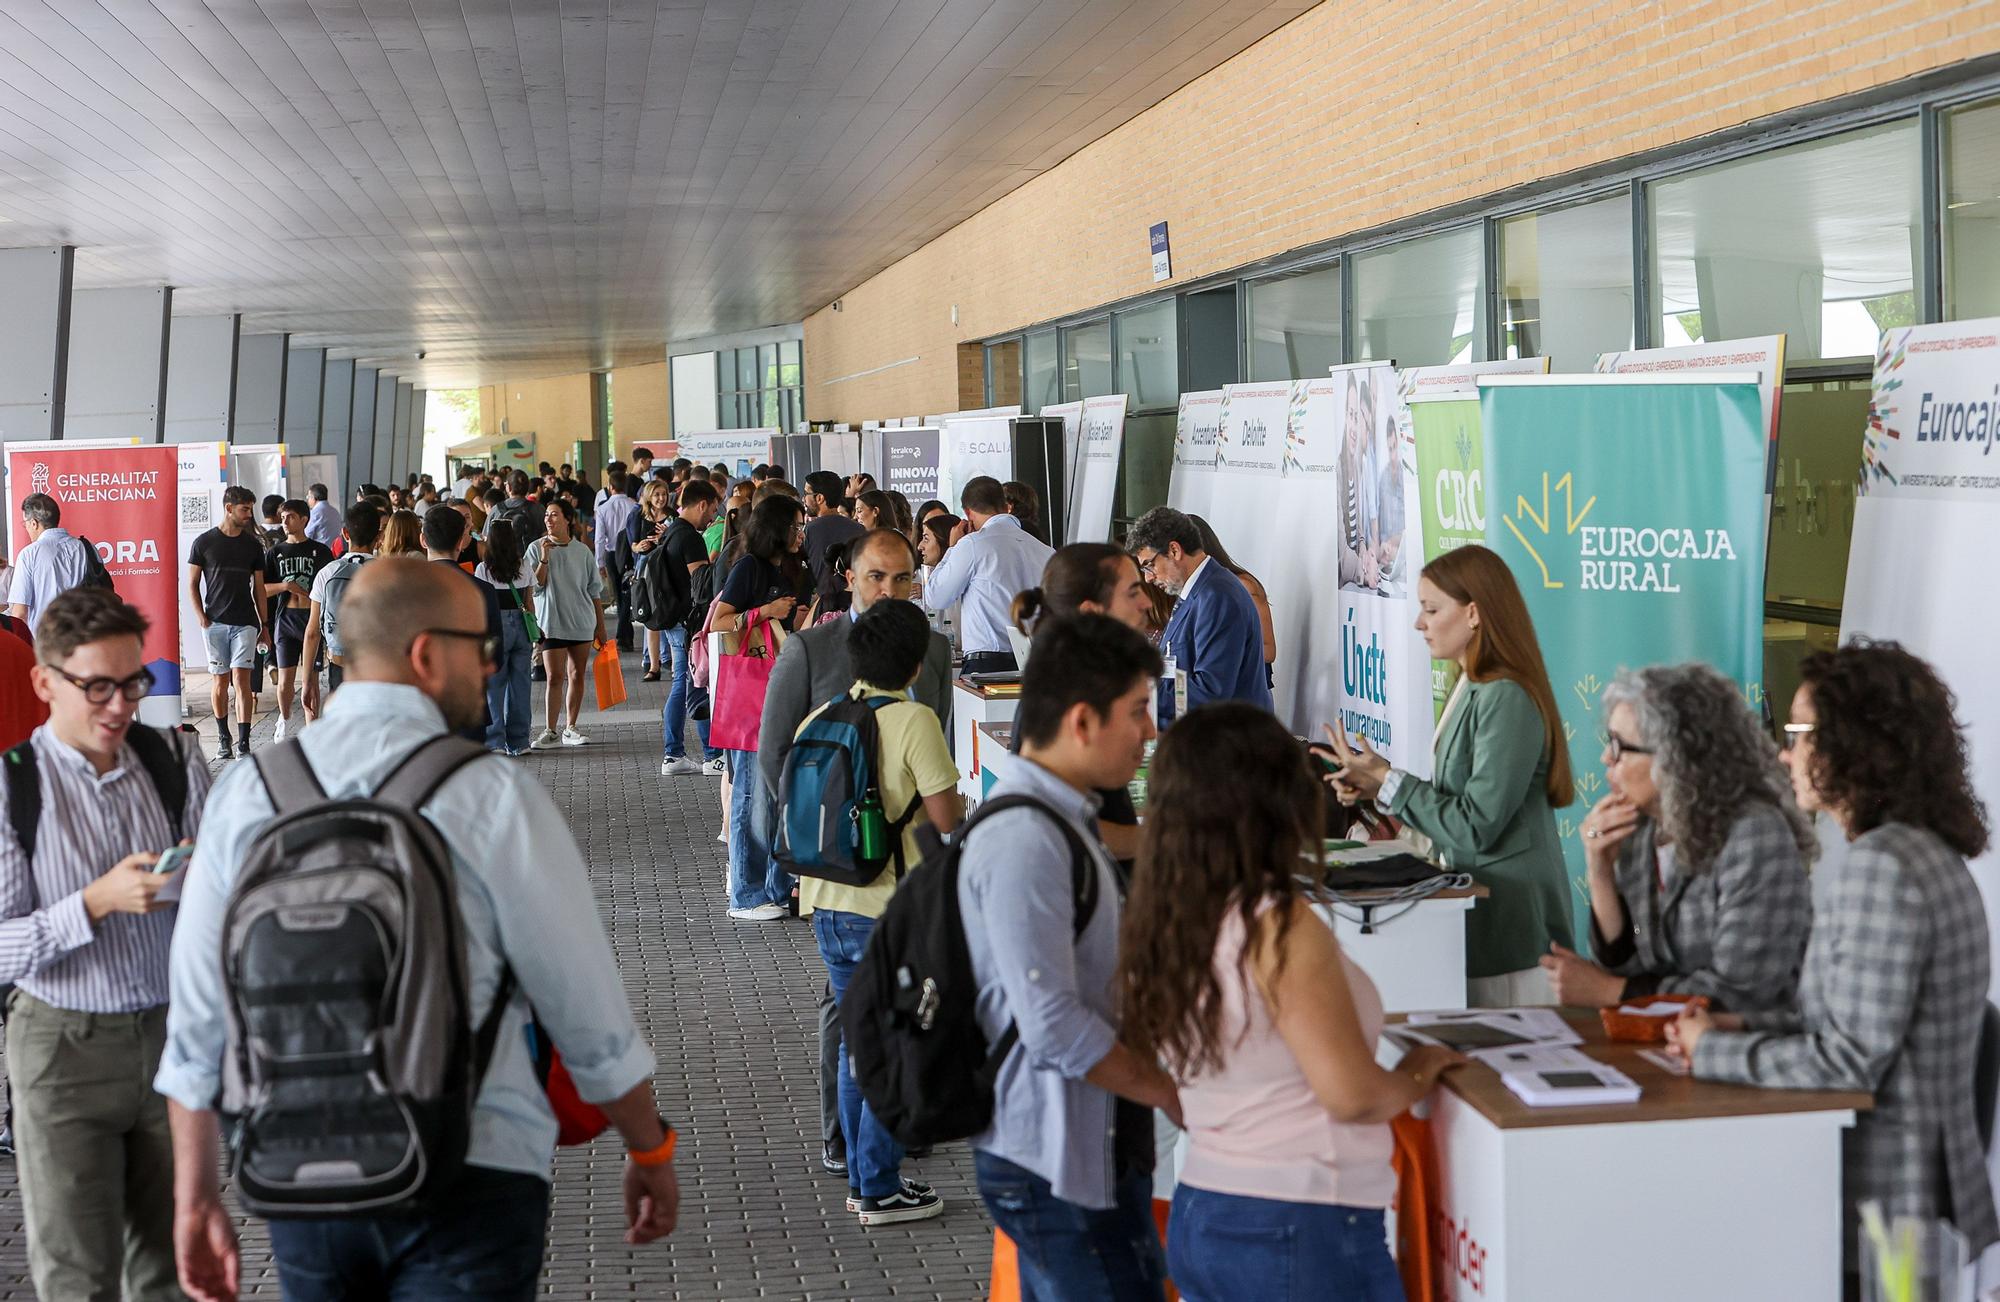 Maraton de Empleo y Emprendimiento de la Universidad de Alicante